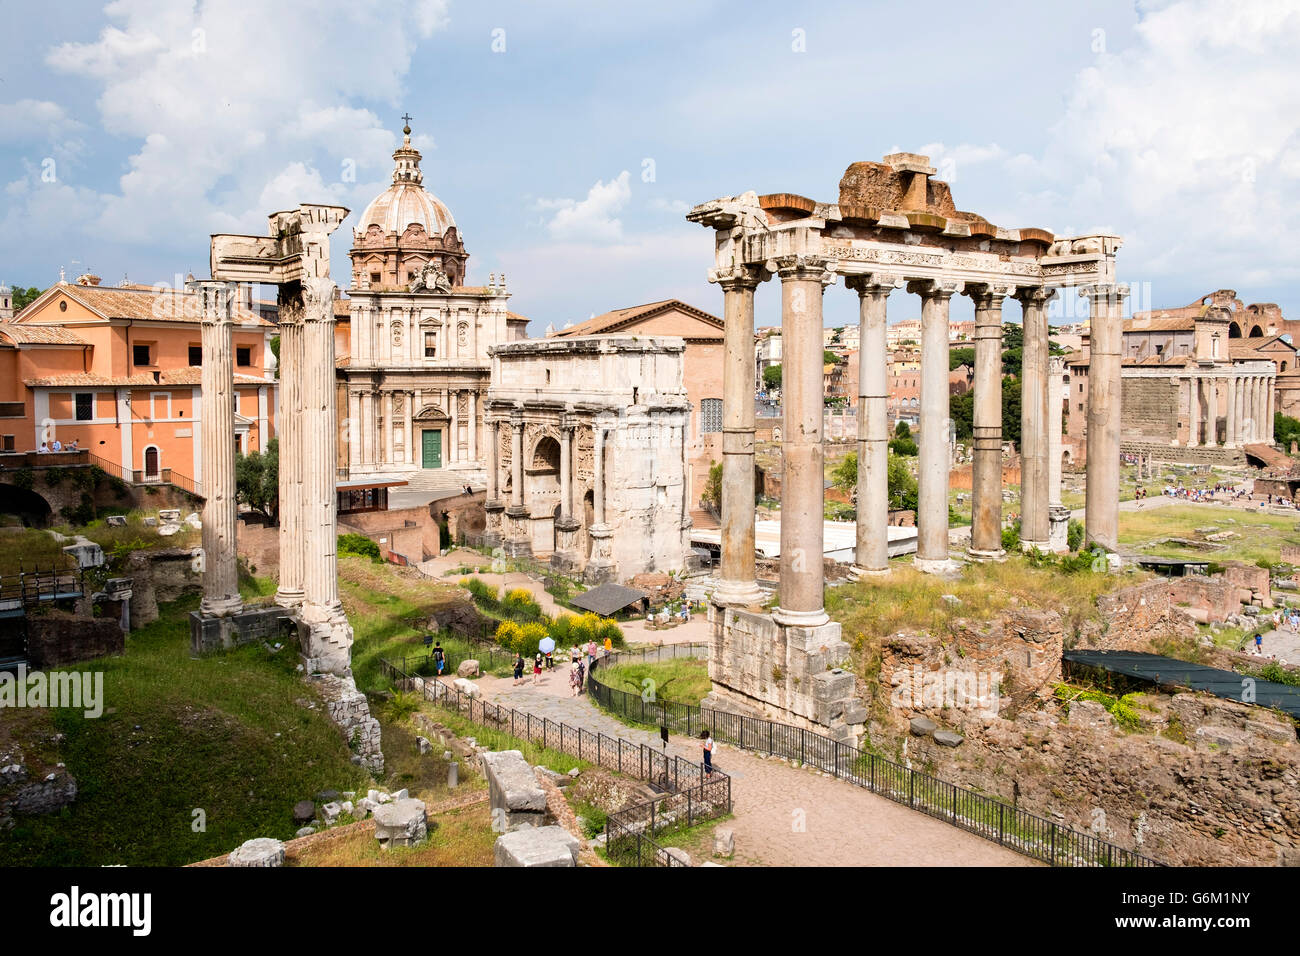 Vista del Foro romano con columnas en ruinas del Templo de Saturno en el derecho en Roma, Italia Foto de stock